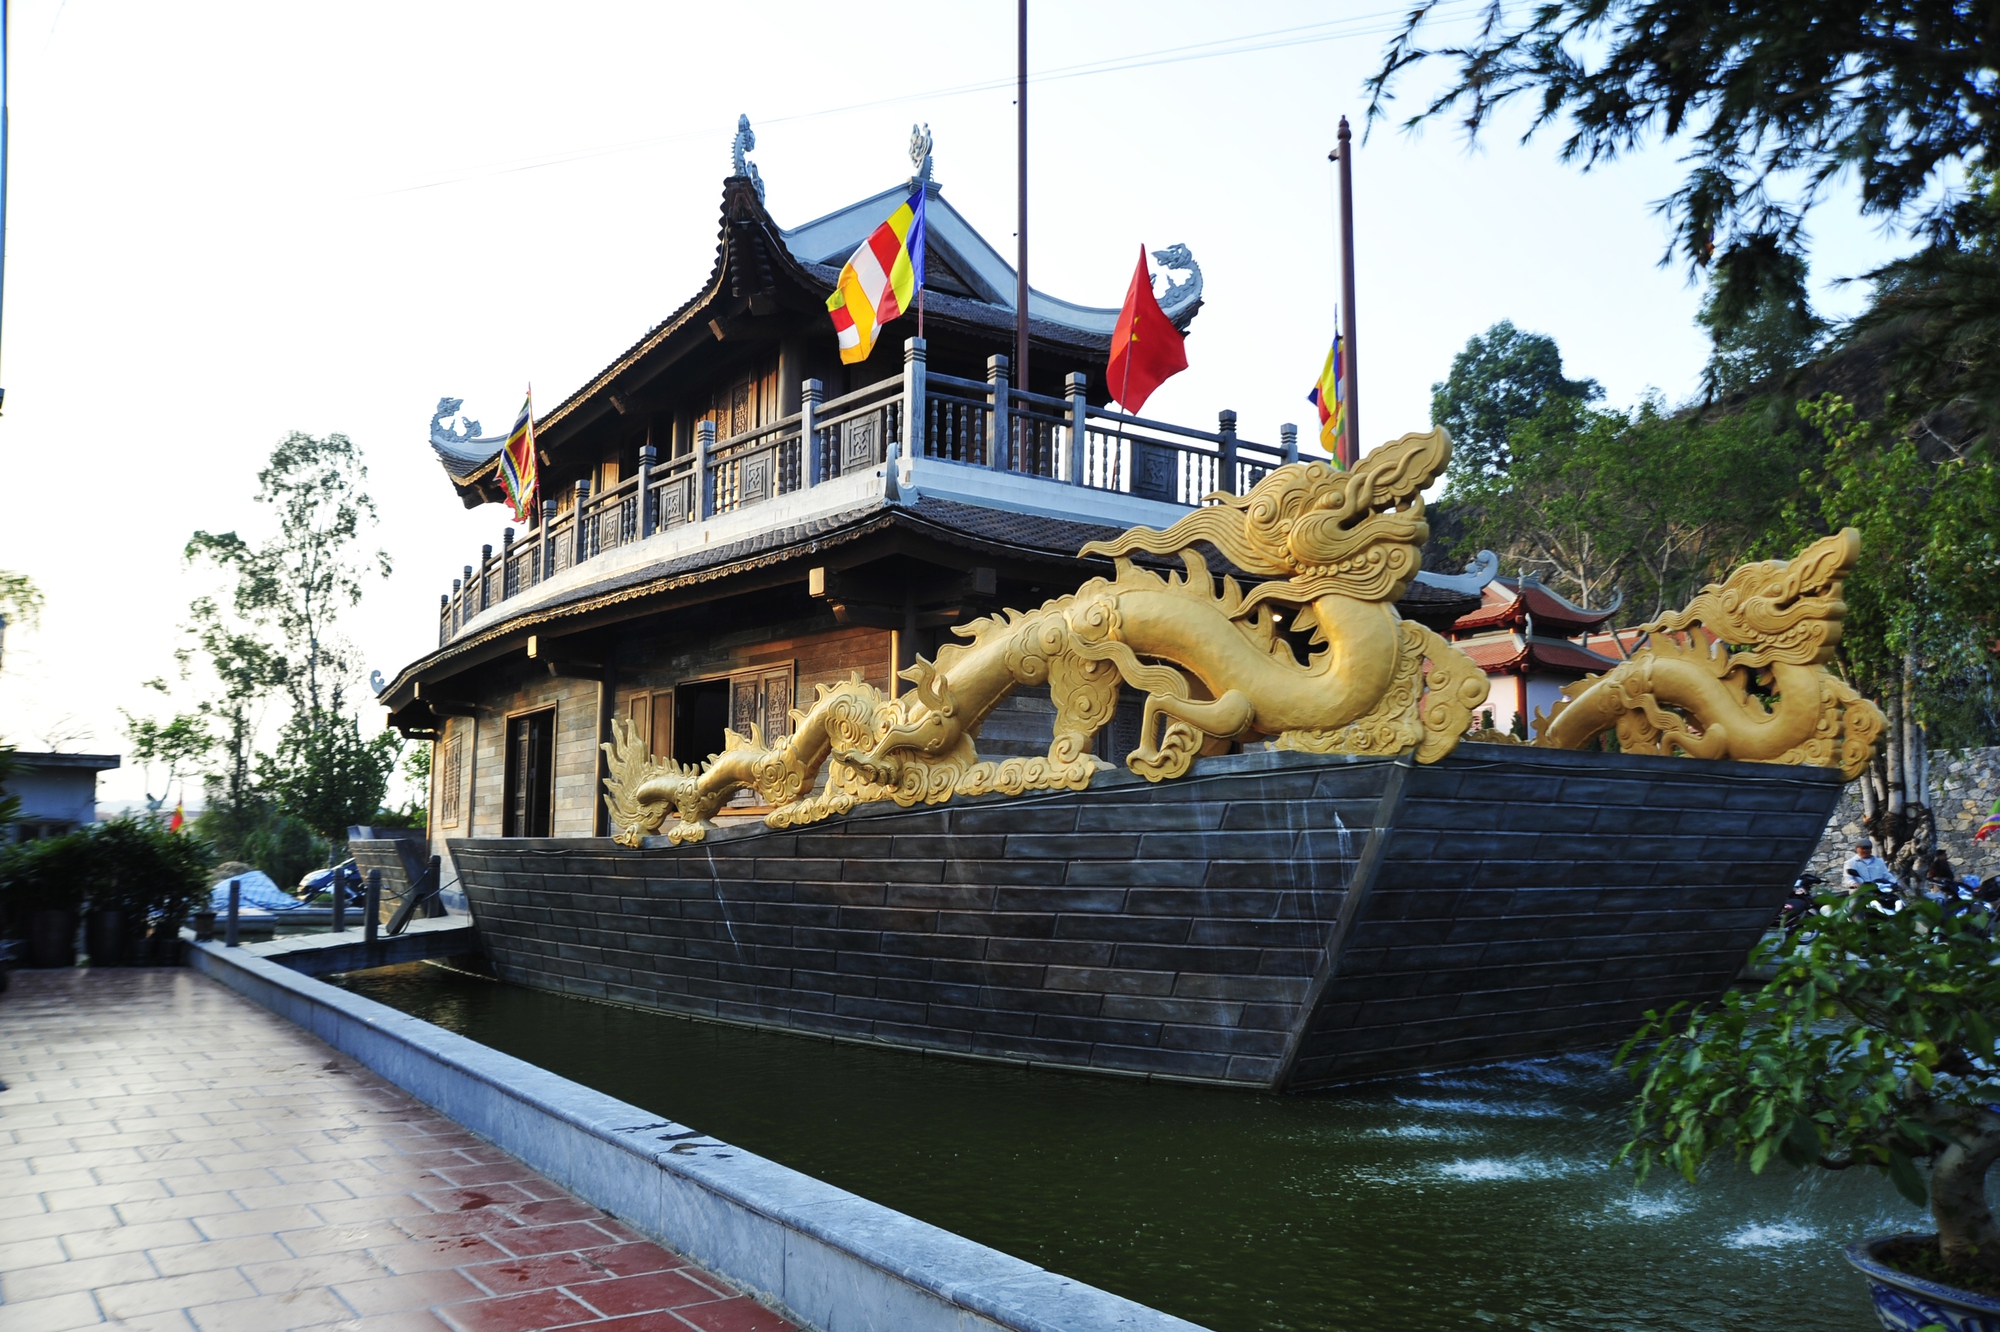 Nhà thuốc nam và nhất là Thuyền rồng – Bảo tàng Huyền Trân công chúa mô phỏng cảnh thuyền rồng đón Công chúa Huyền Trân từ Chiêm Thành về nước.